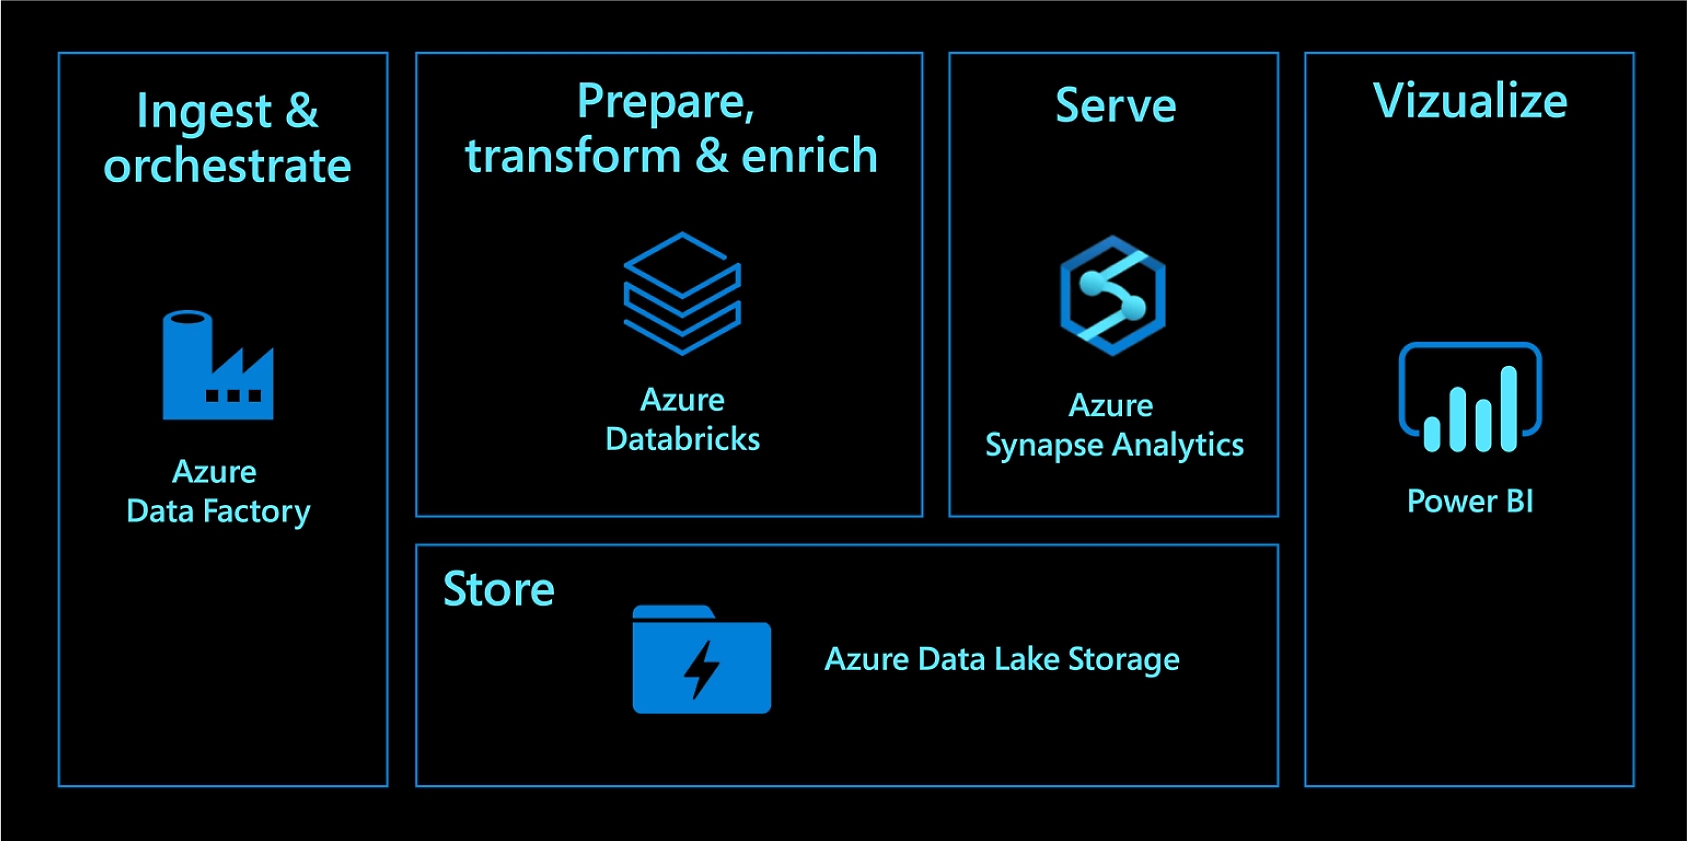 Erfassung und Orchestrierung mit Azure Data Factory. Vorbereitung, Umwandlung und Anreicherung mit Azure Databricks. Bereitstellung mit Azure Synapse Analytics. Speicherung mit Azure Data Lake Storage. Visualisierung mit Power BI.